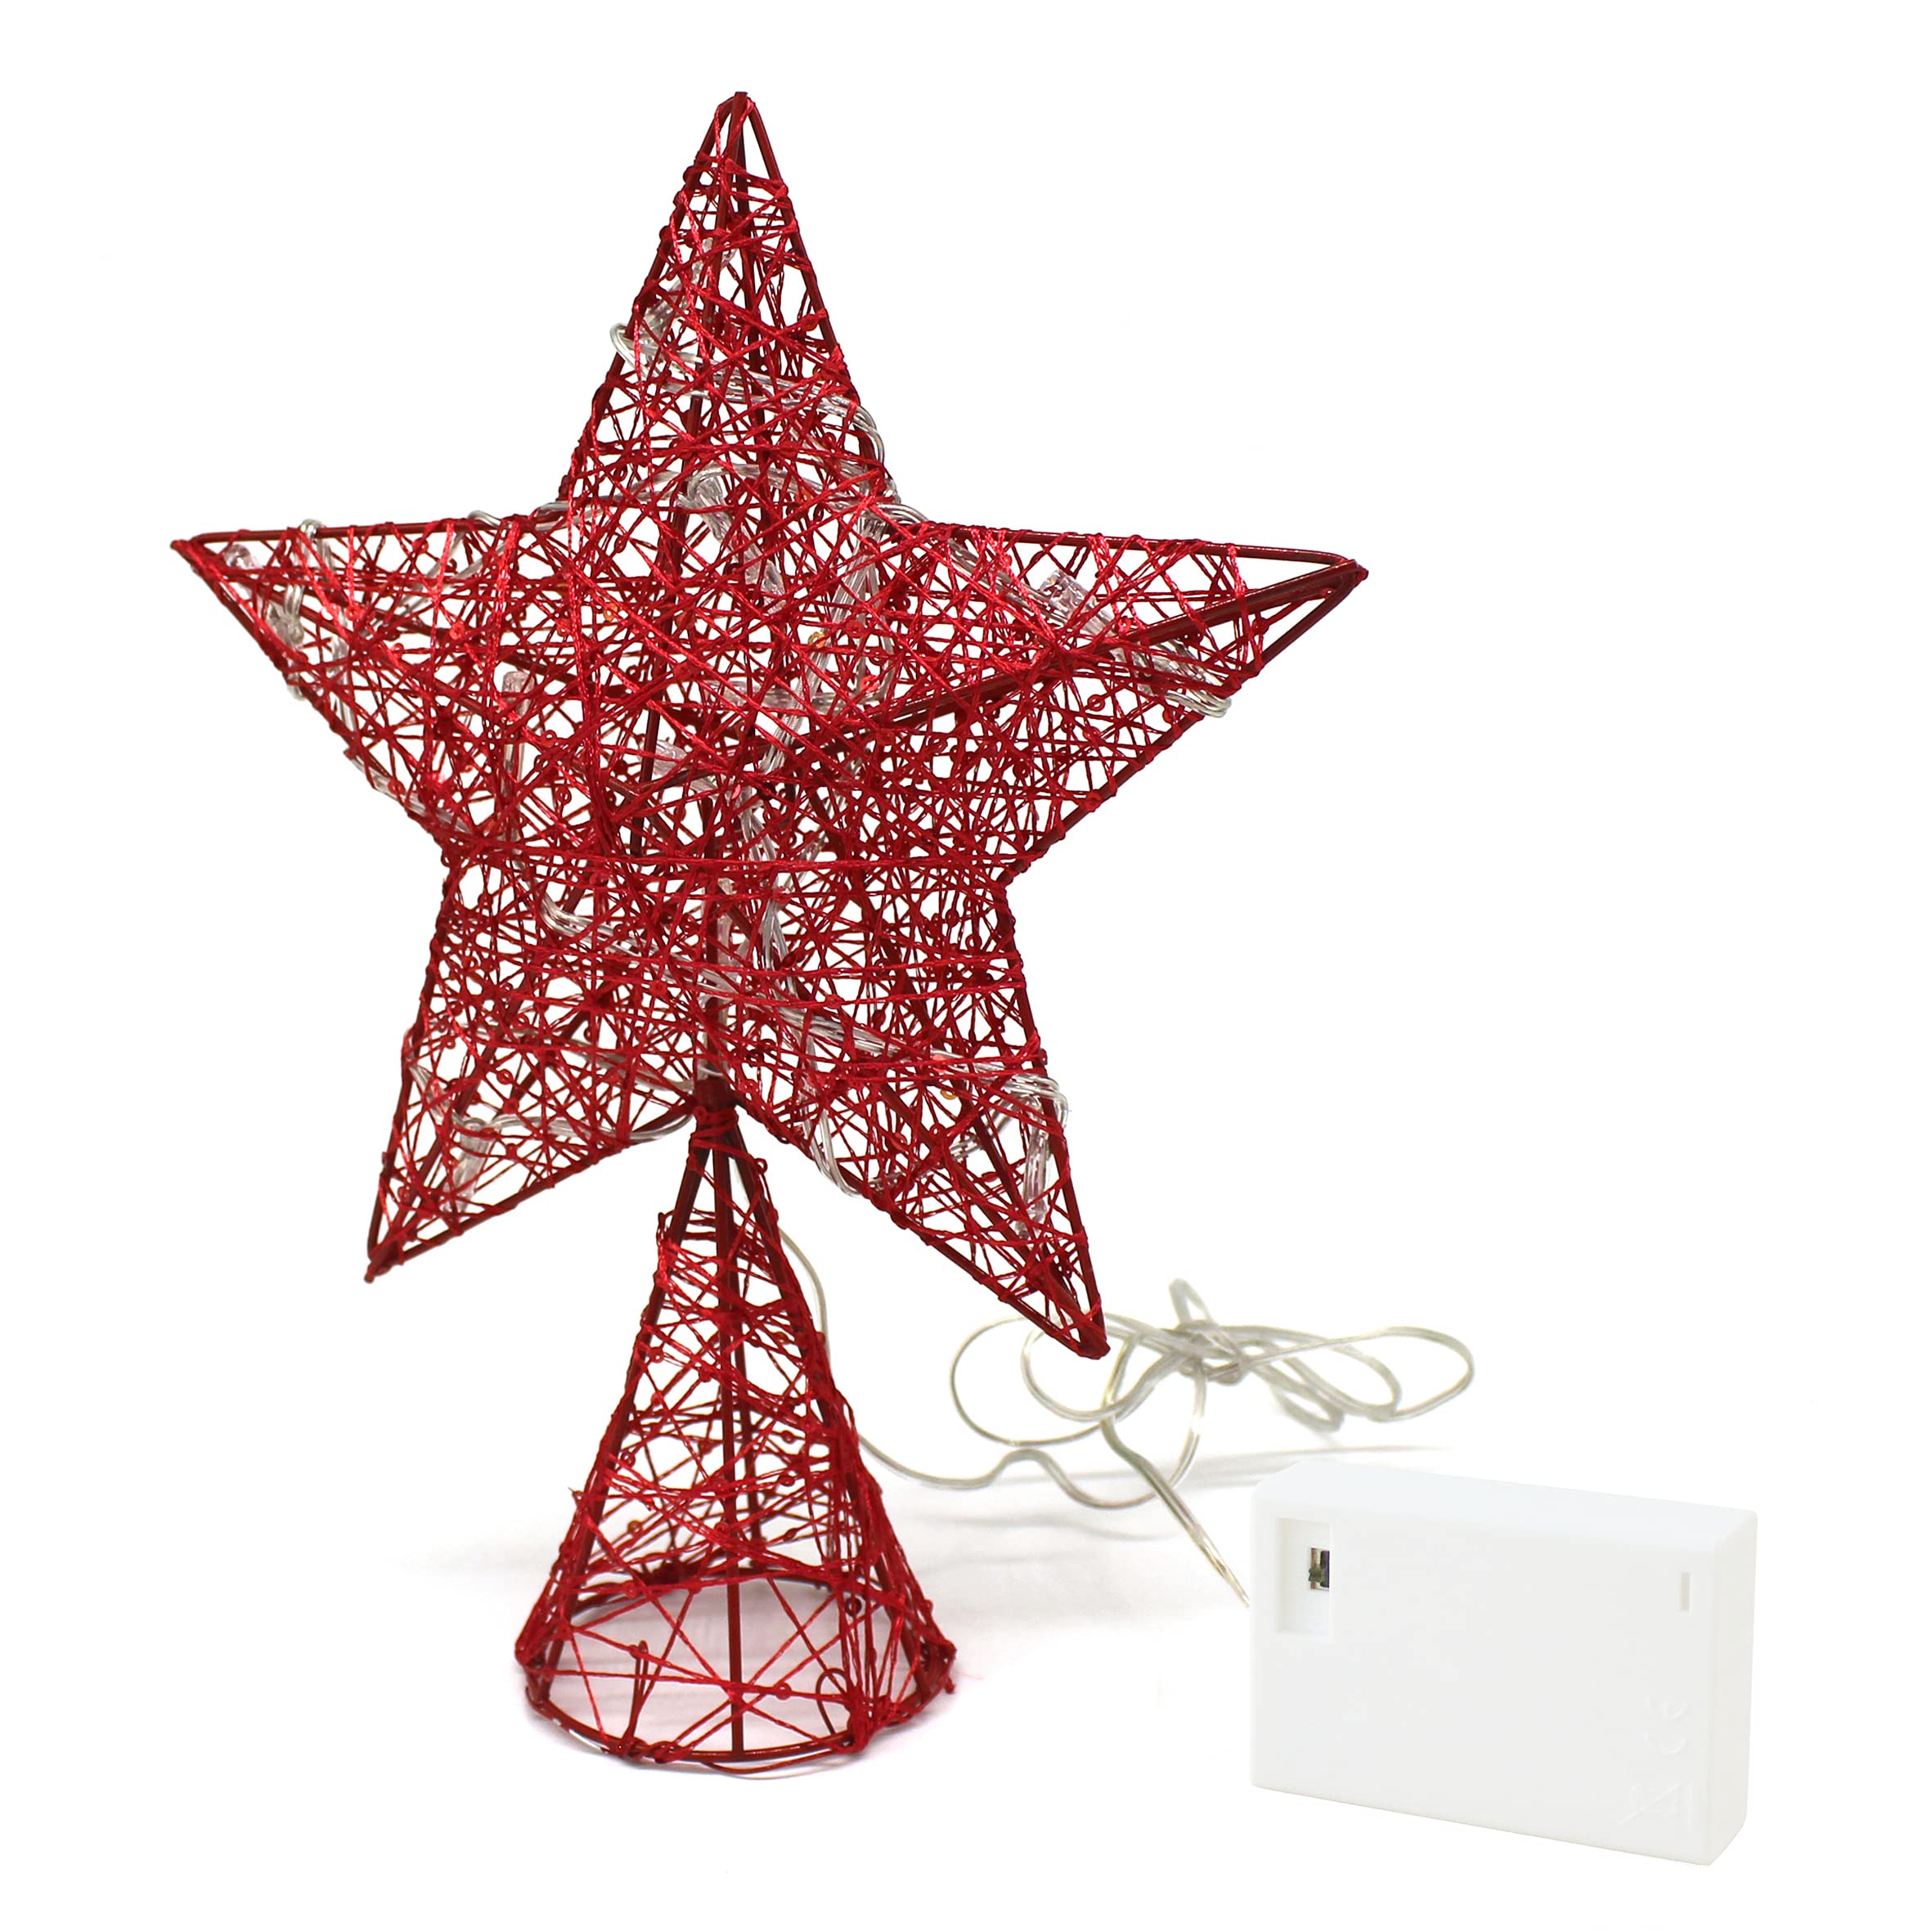 CVHOMEDECO. Roter Baumkronen-Stern mit warmweißen LED-Leuchten und Timer für Weihnachtsschmuck und saisonale Weihnachtsdekoration, 20,3 x 25,4 cm